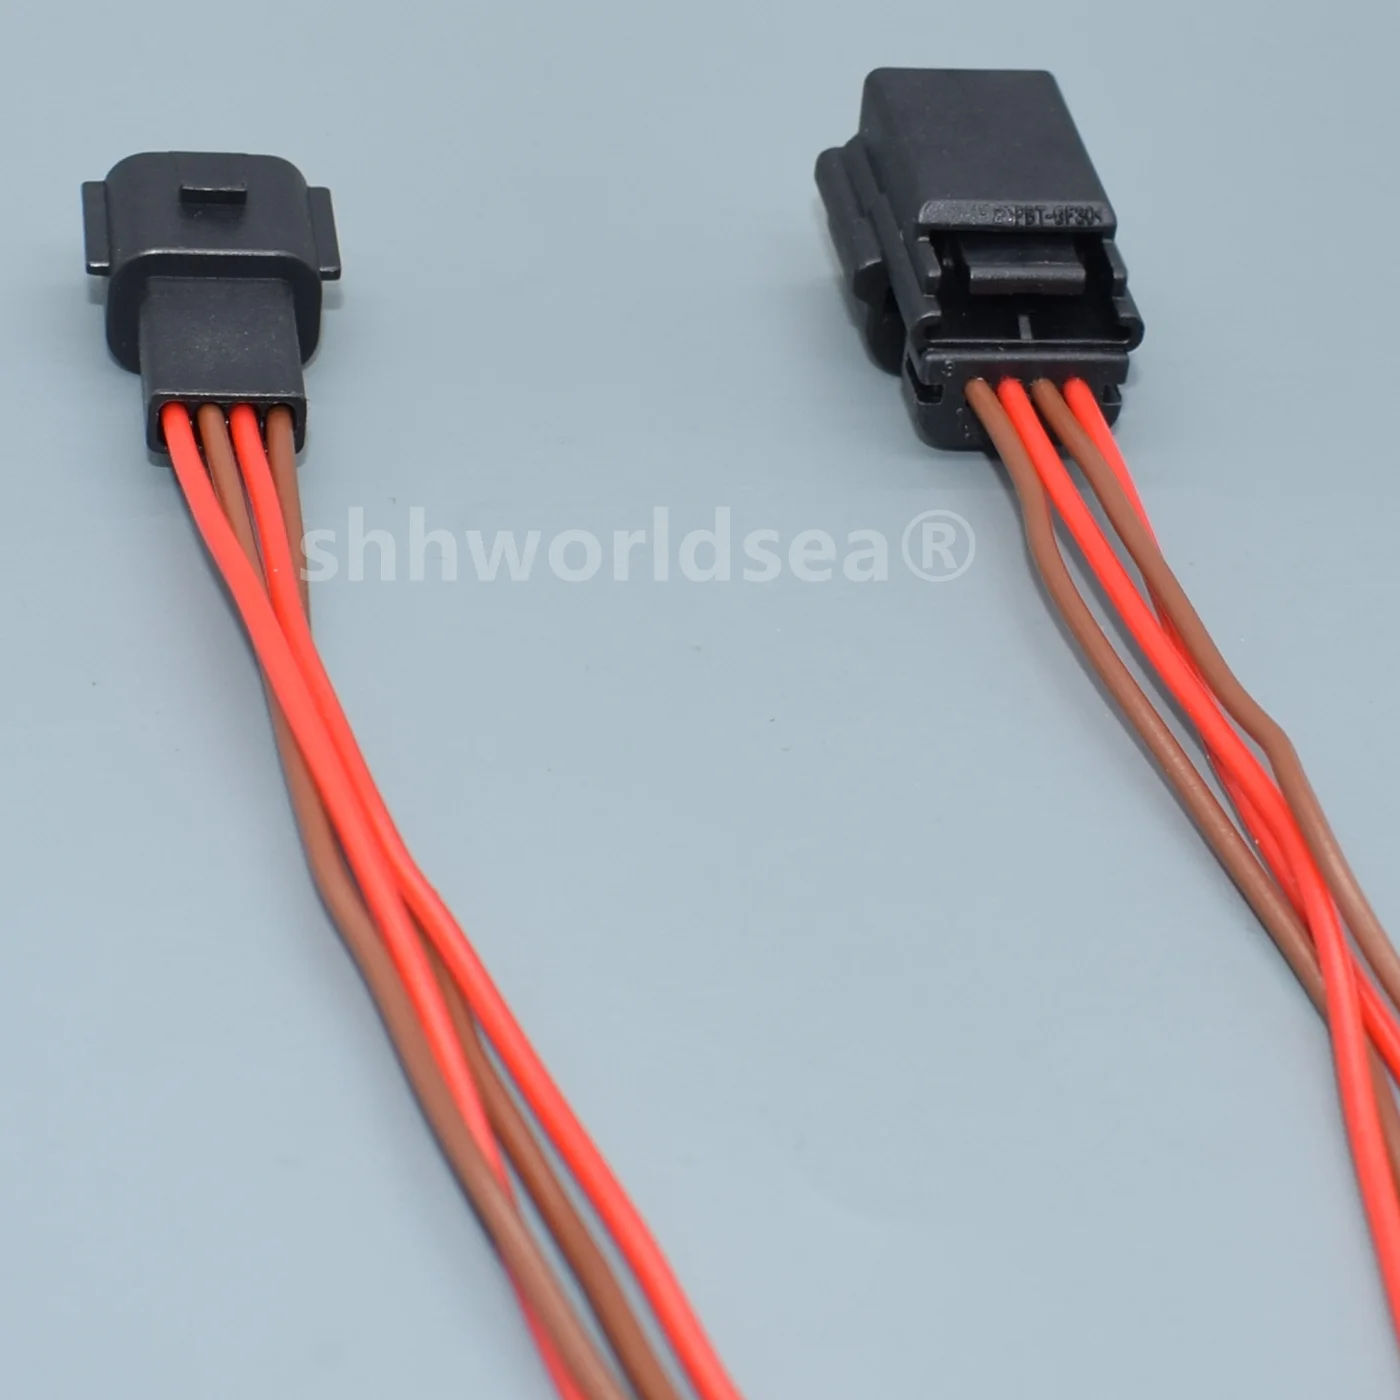 shhworldsea 4 tűs 0.6-os sorozatú autó passzív kulcs nélküli belépő antenna érzékelő huzal csatlakozó kábel lezáratlan aljzat - 4